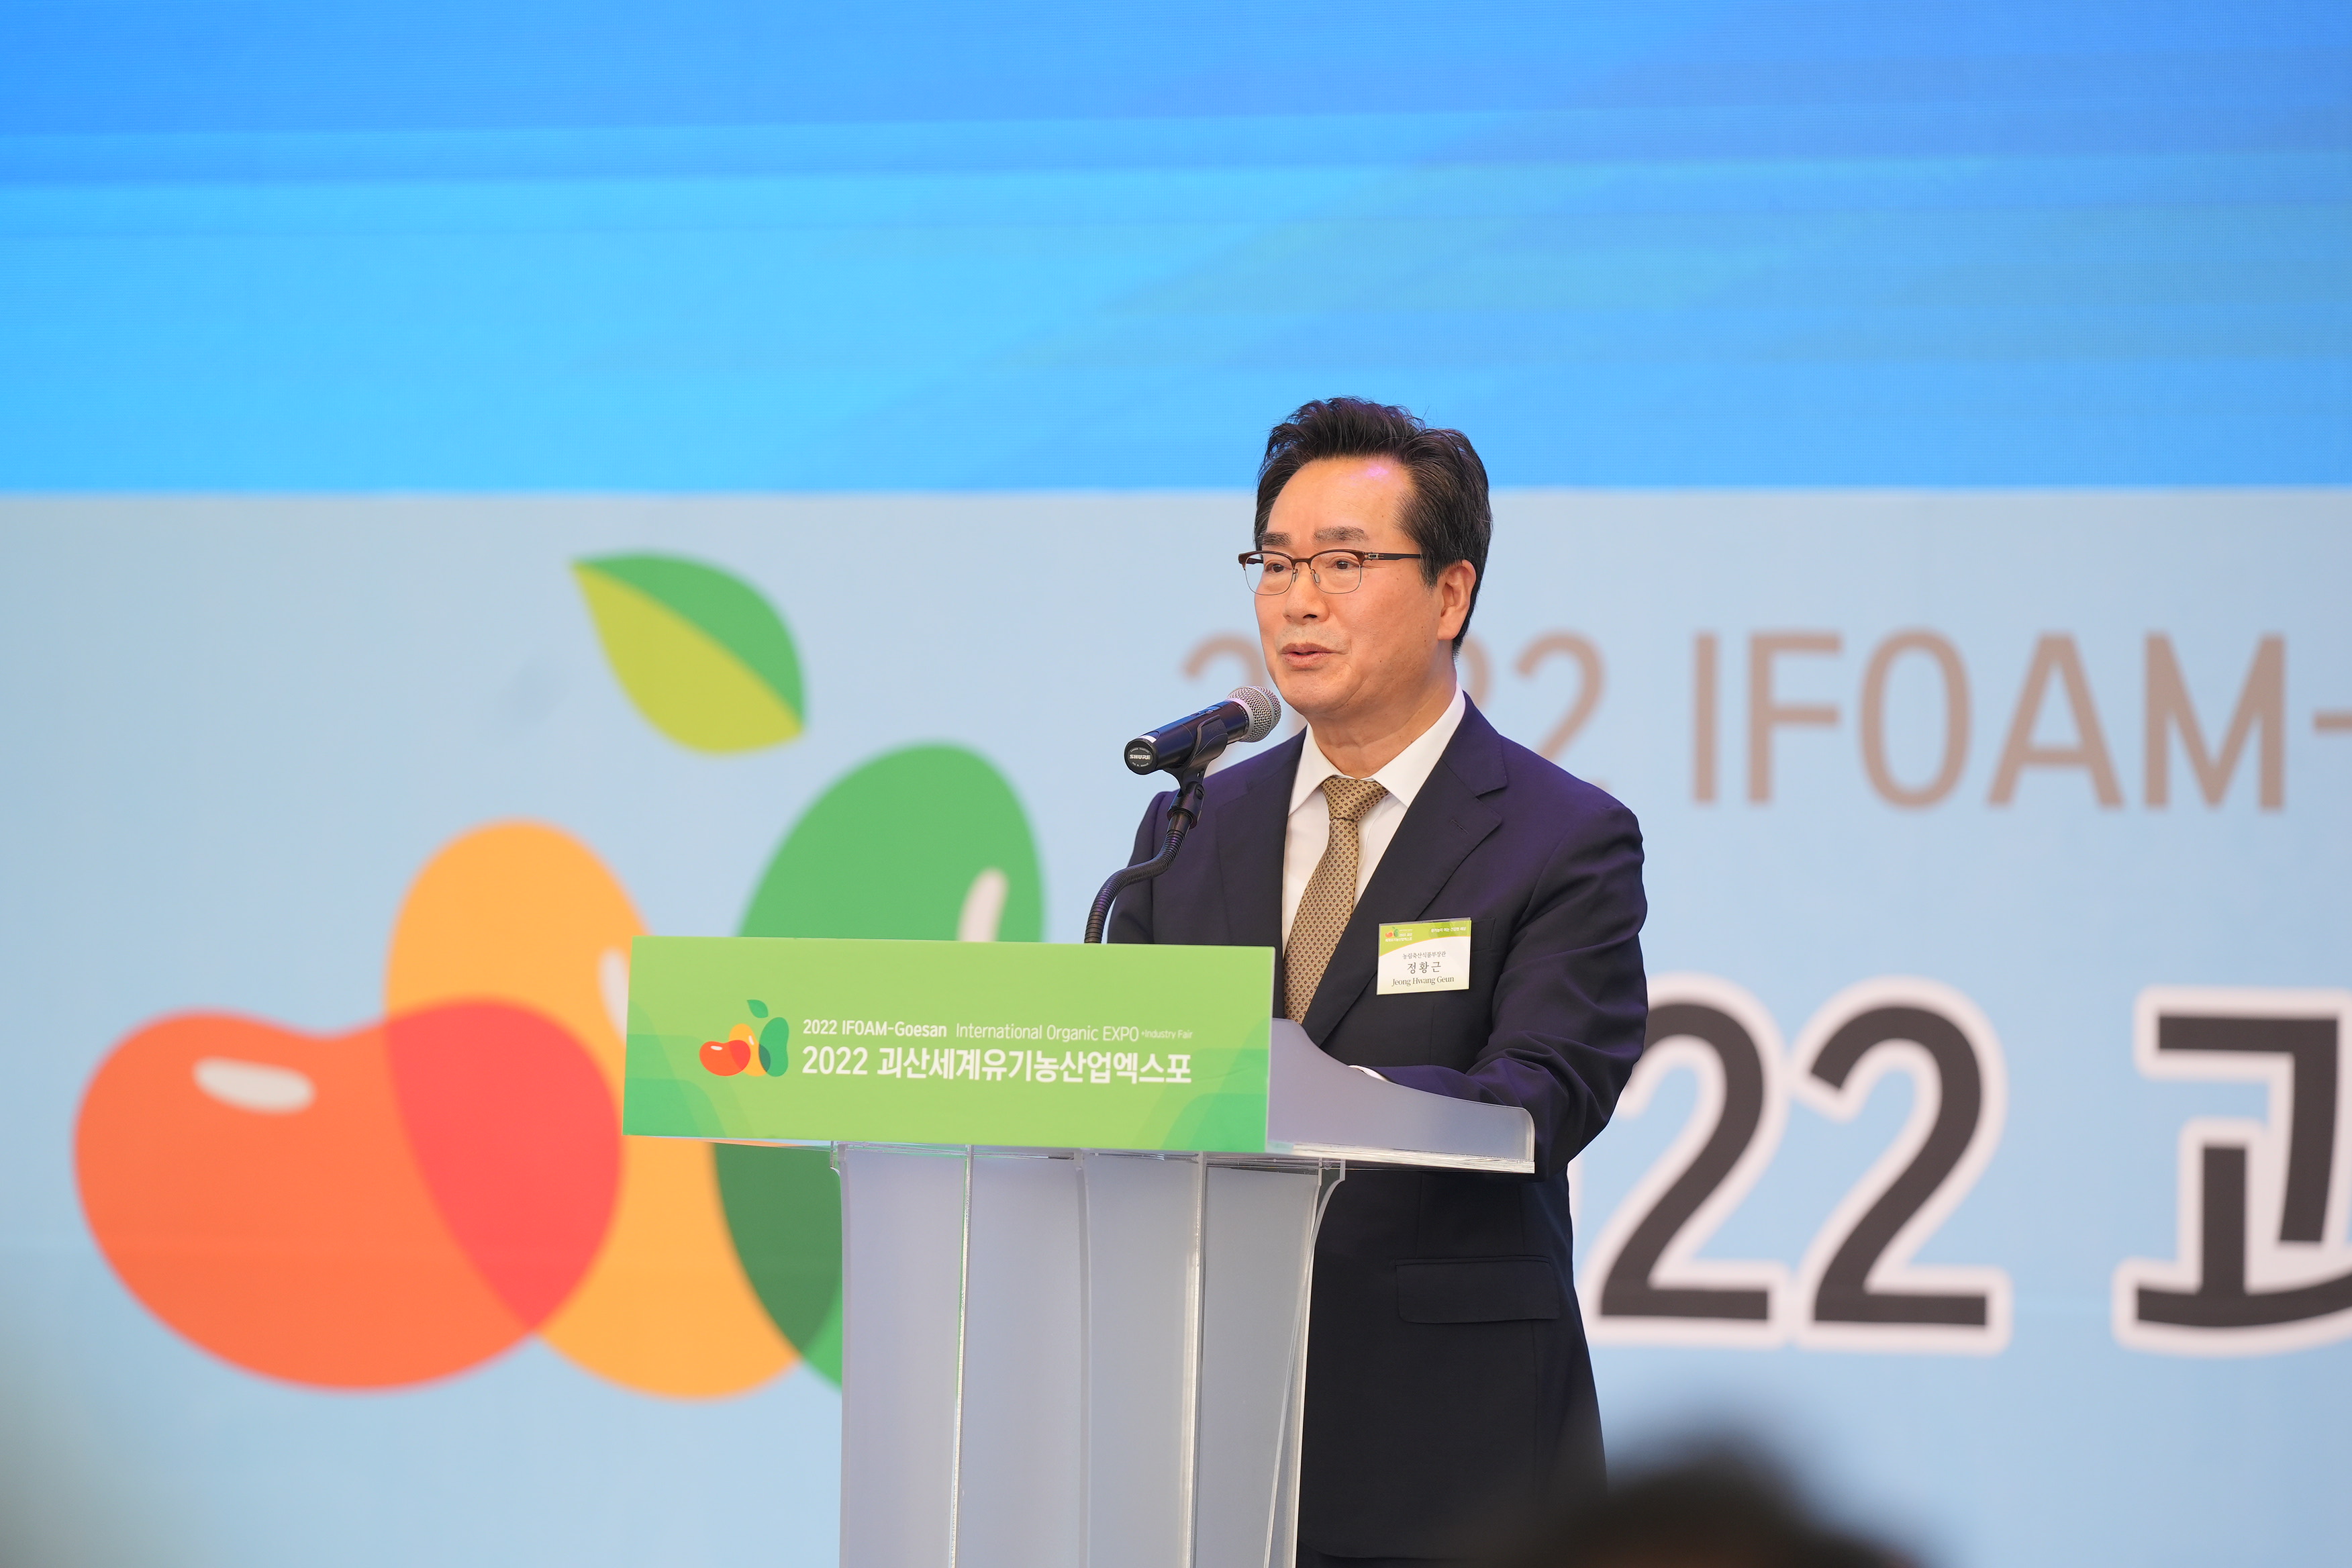 정황근 장관, 2022 괴산 세계 유기농산업 엑스포 행사 참석